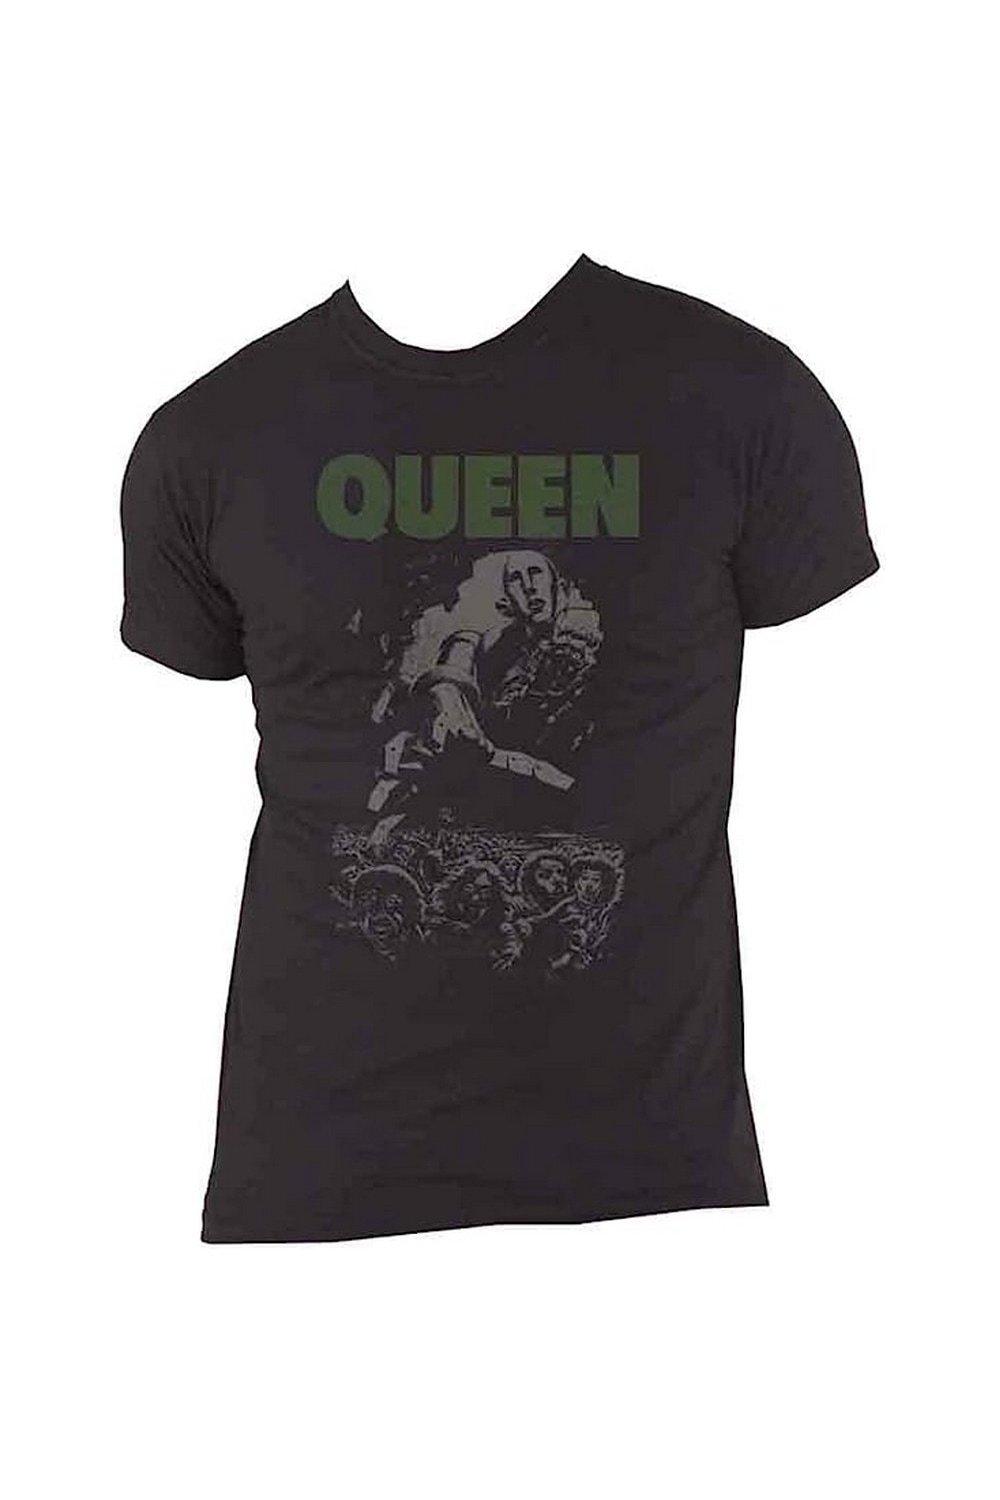 Футболка News Of The World Album Queen, черный футболка news of the world album queen черный